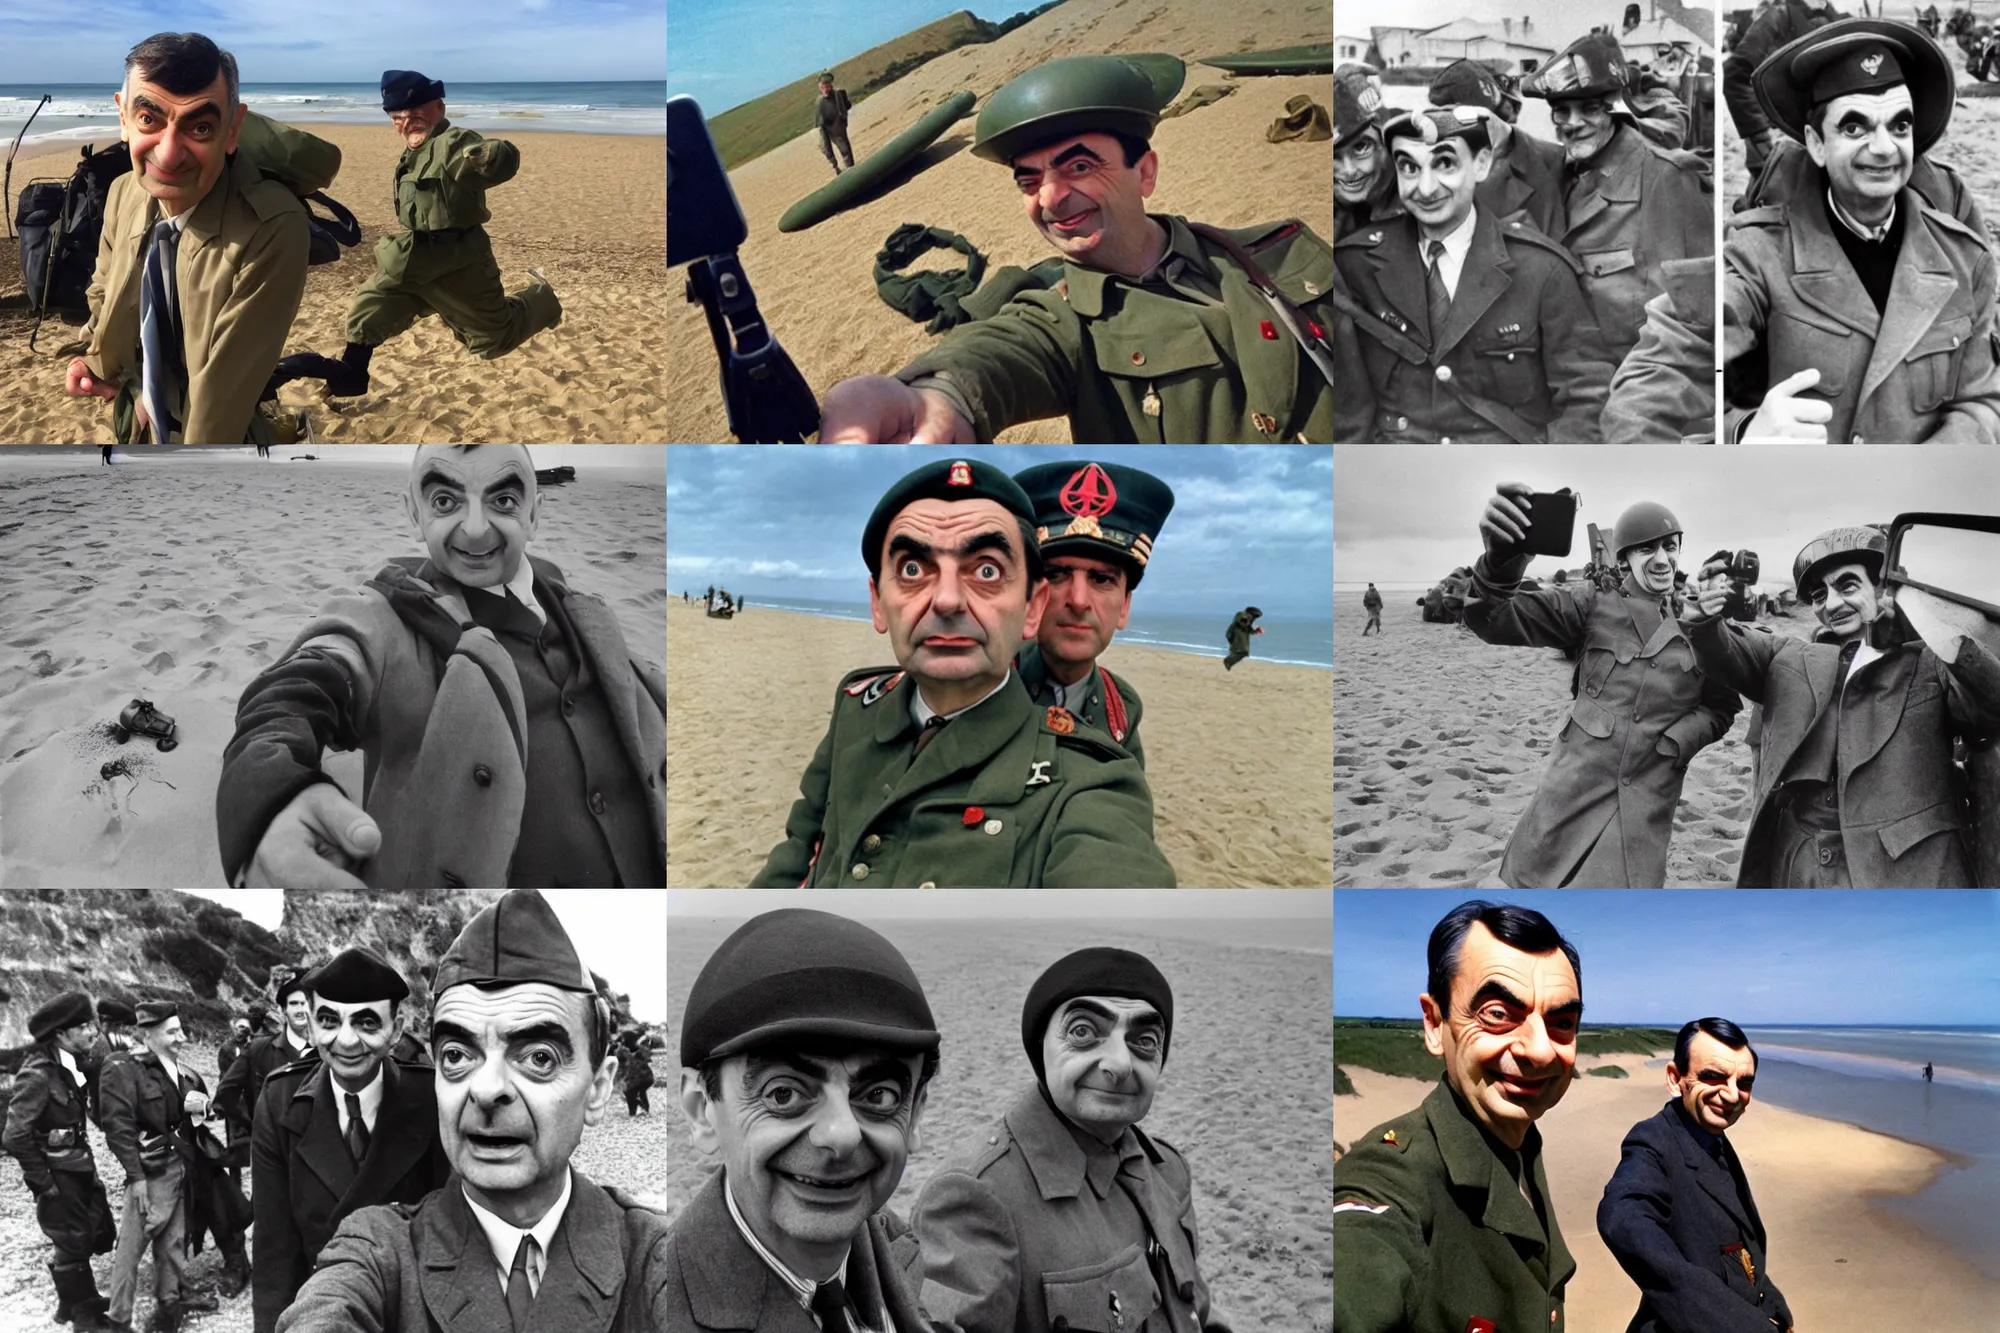 Prompt: Mr. Bean, selfie, Omaha beach, WW2